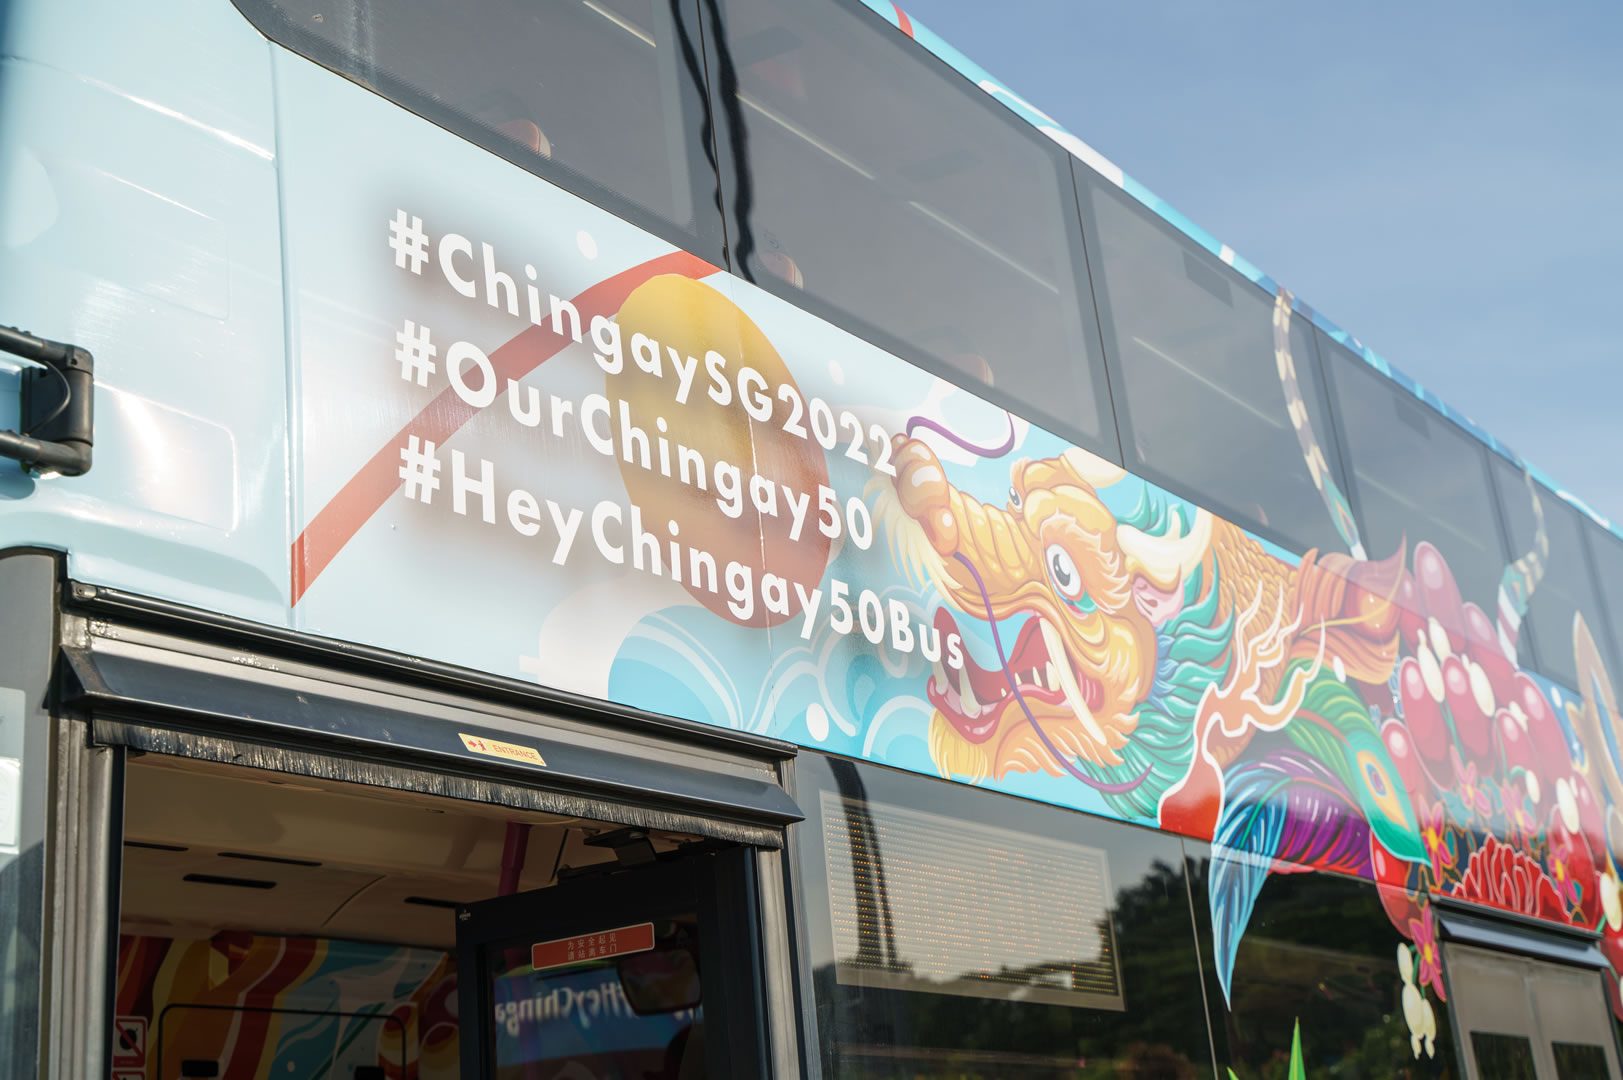 Close Up of Chingay50 Bus